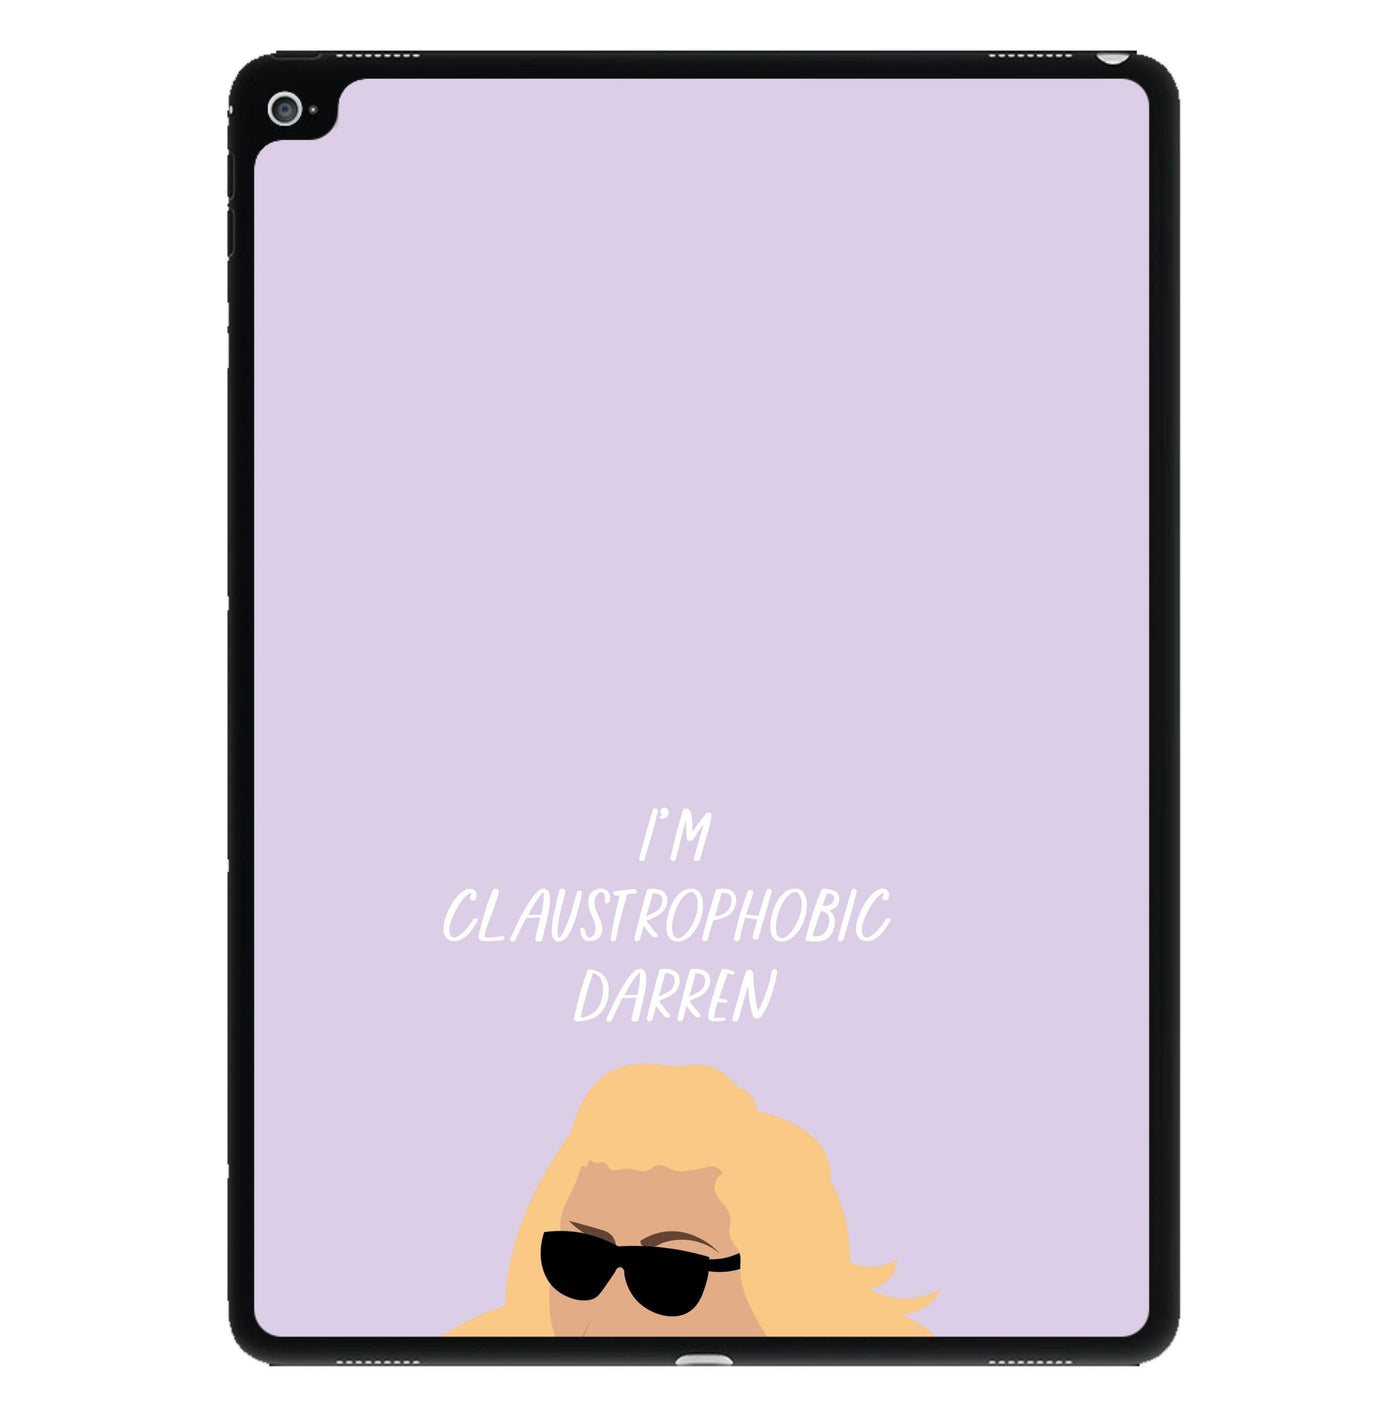 I'm Claustrophobic Darren - British Pop Culture iPad Case